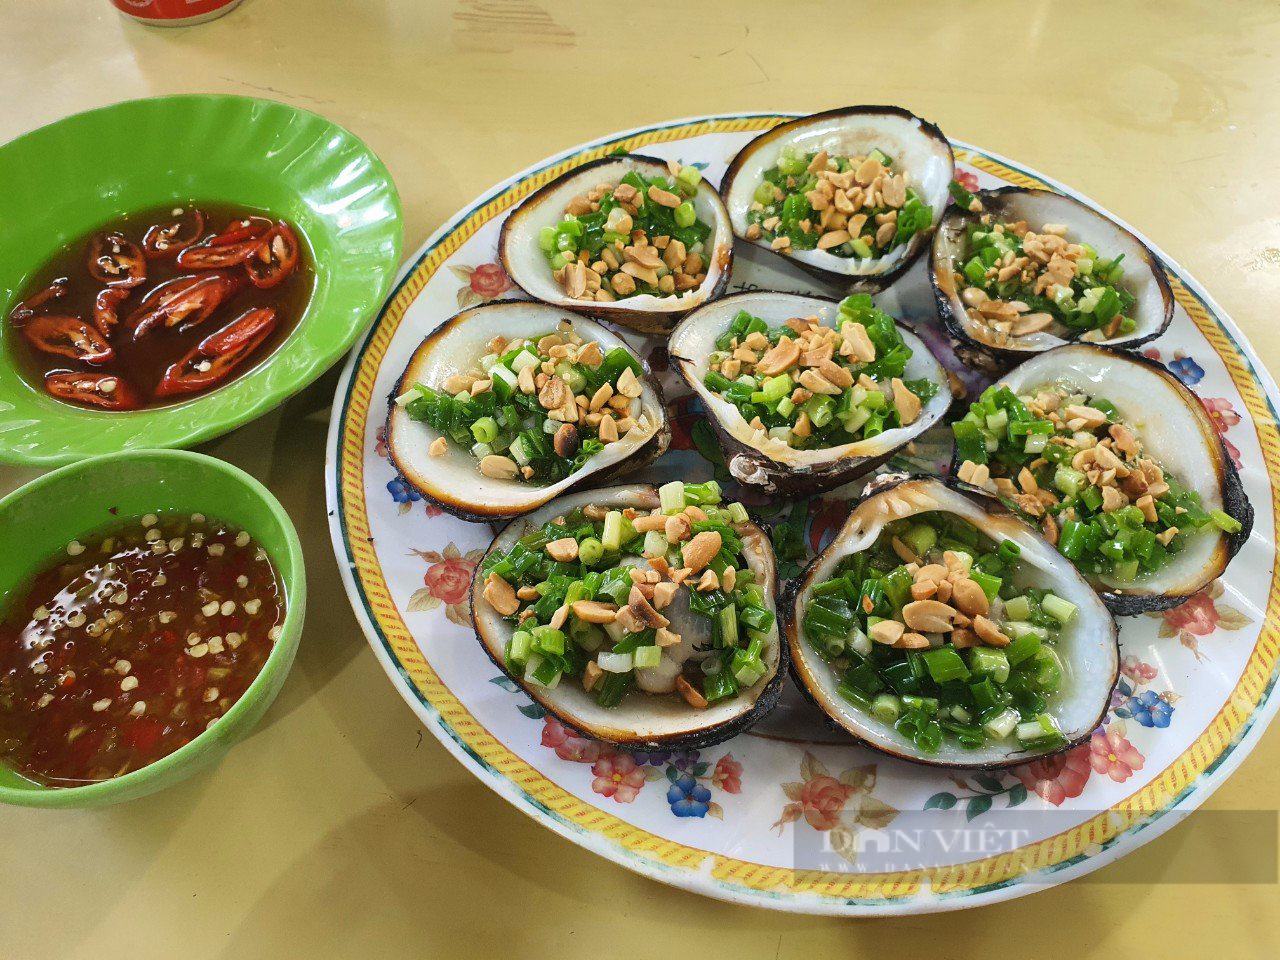 Du lịch Cần Giờ, nhiều thực khách ghé quán Thanh Lịch ăn hải sản tươi ngon, giá phải chăng - Ảnh 6.